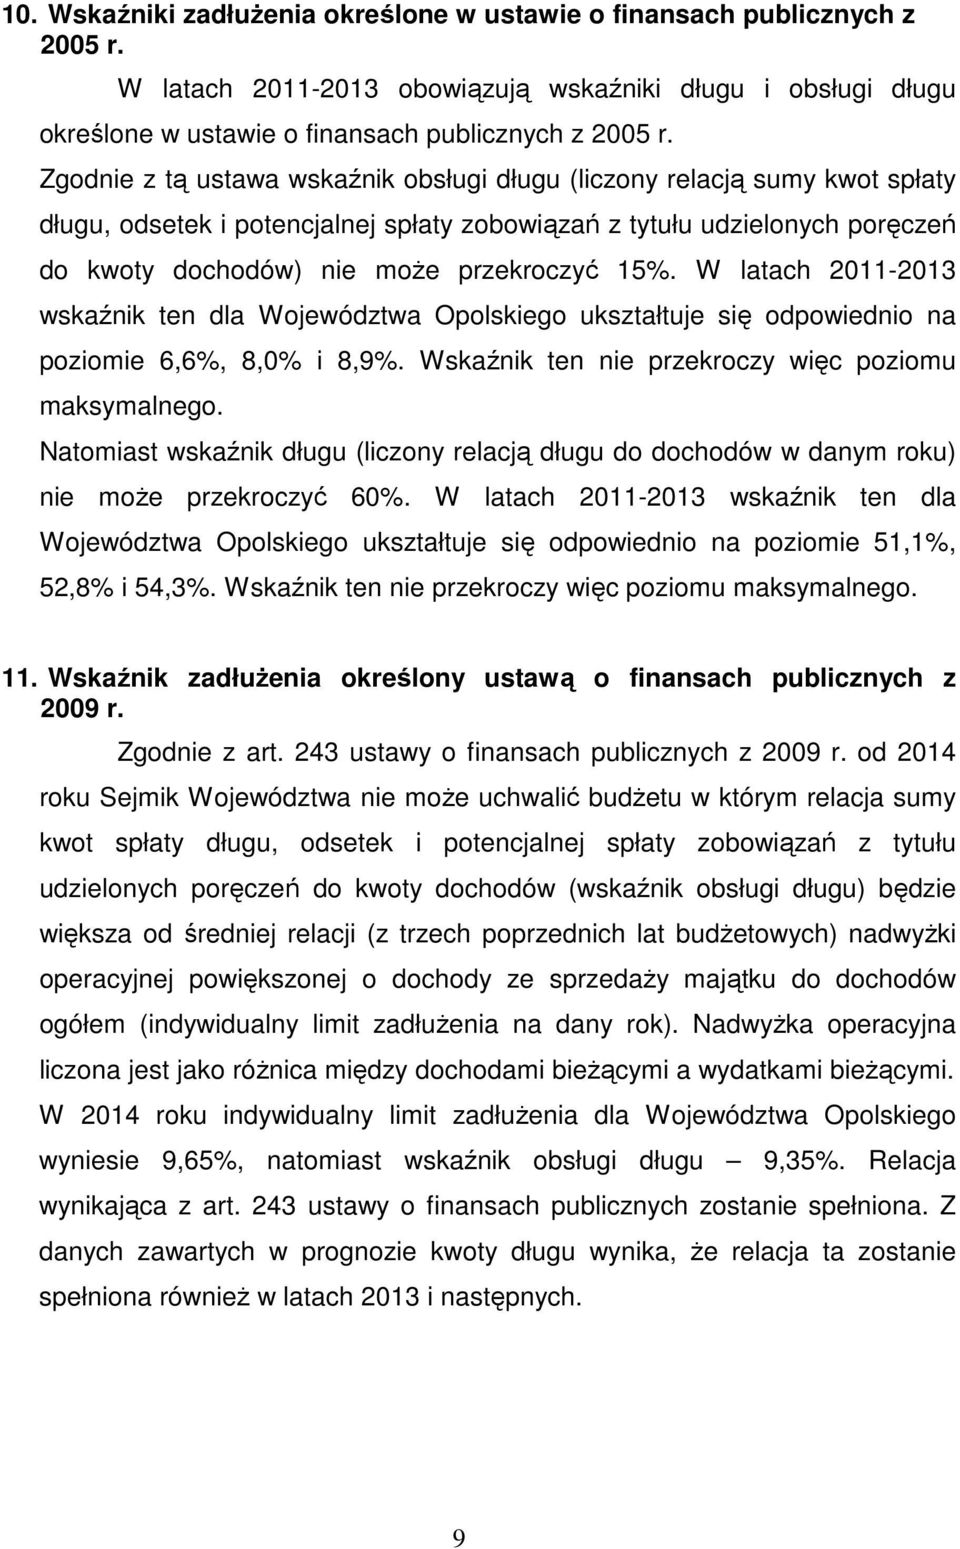 W latach 2011-2013 wskaźnik ten dla Województwa Opolskiego ukształtuje się odpowiednio na poziomie 6,6%, 8,0% i 8,9%. Wskaźnik ten nie przekroczy więc poziomu maksymalnego.